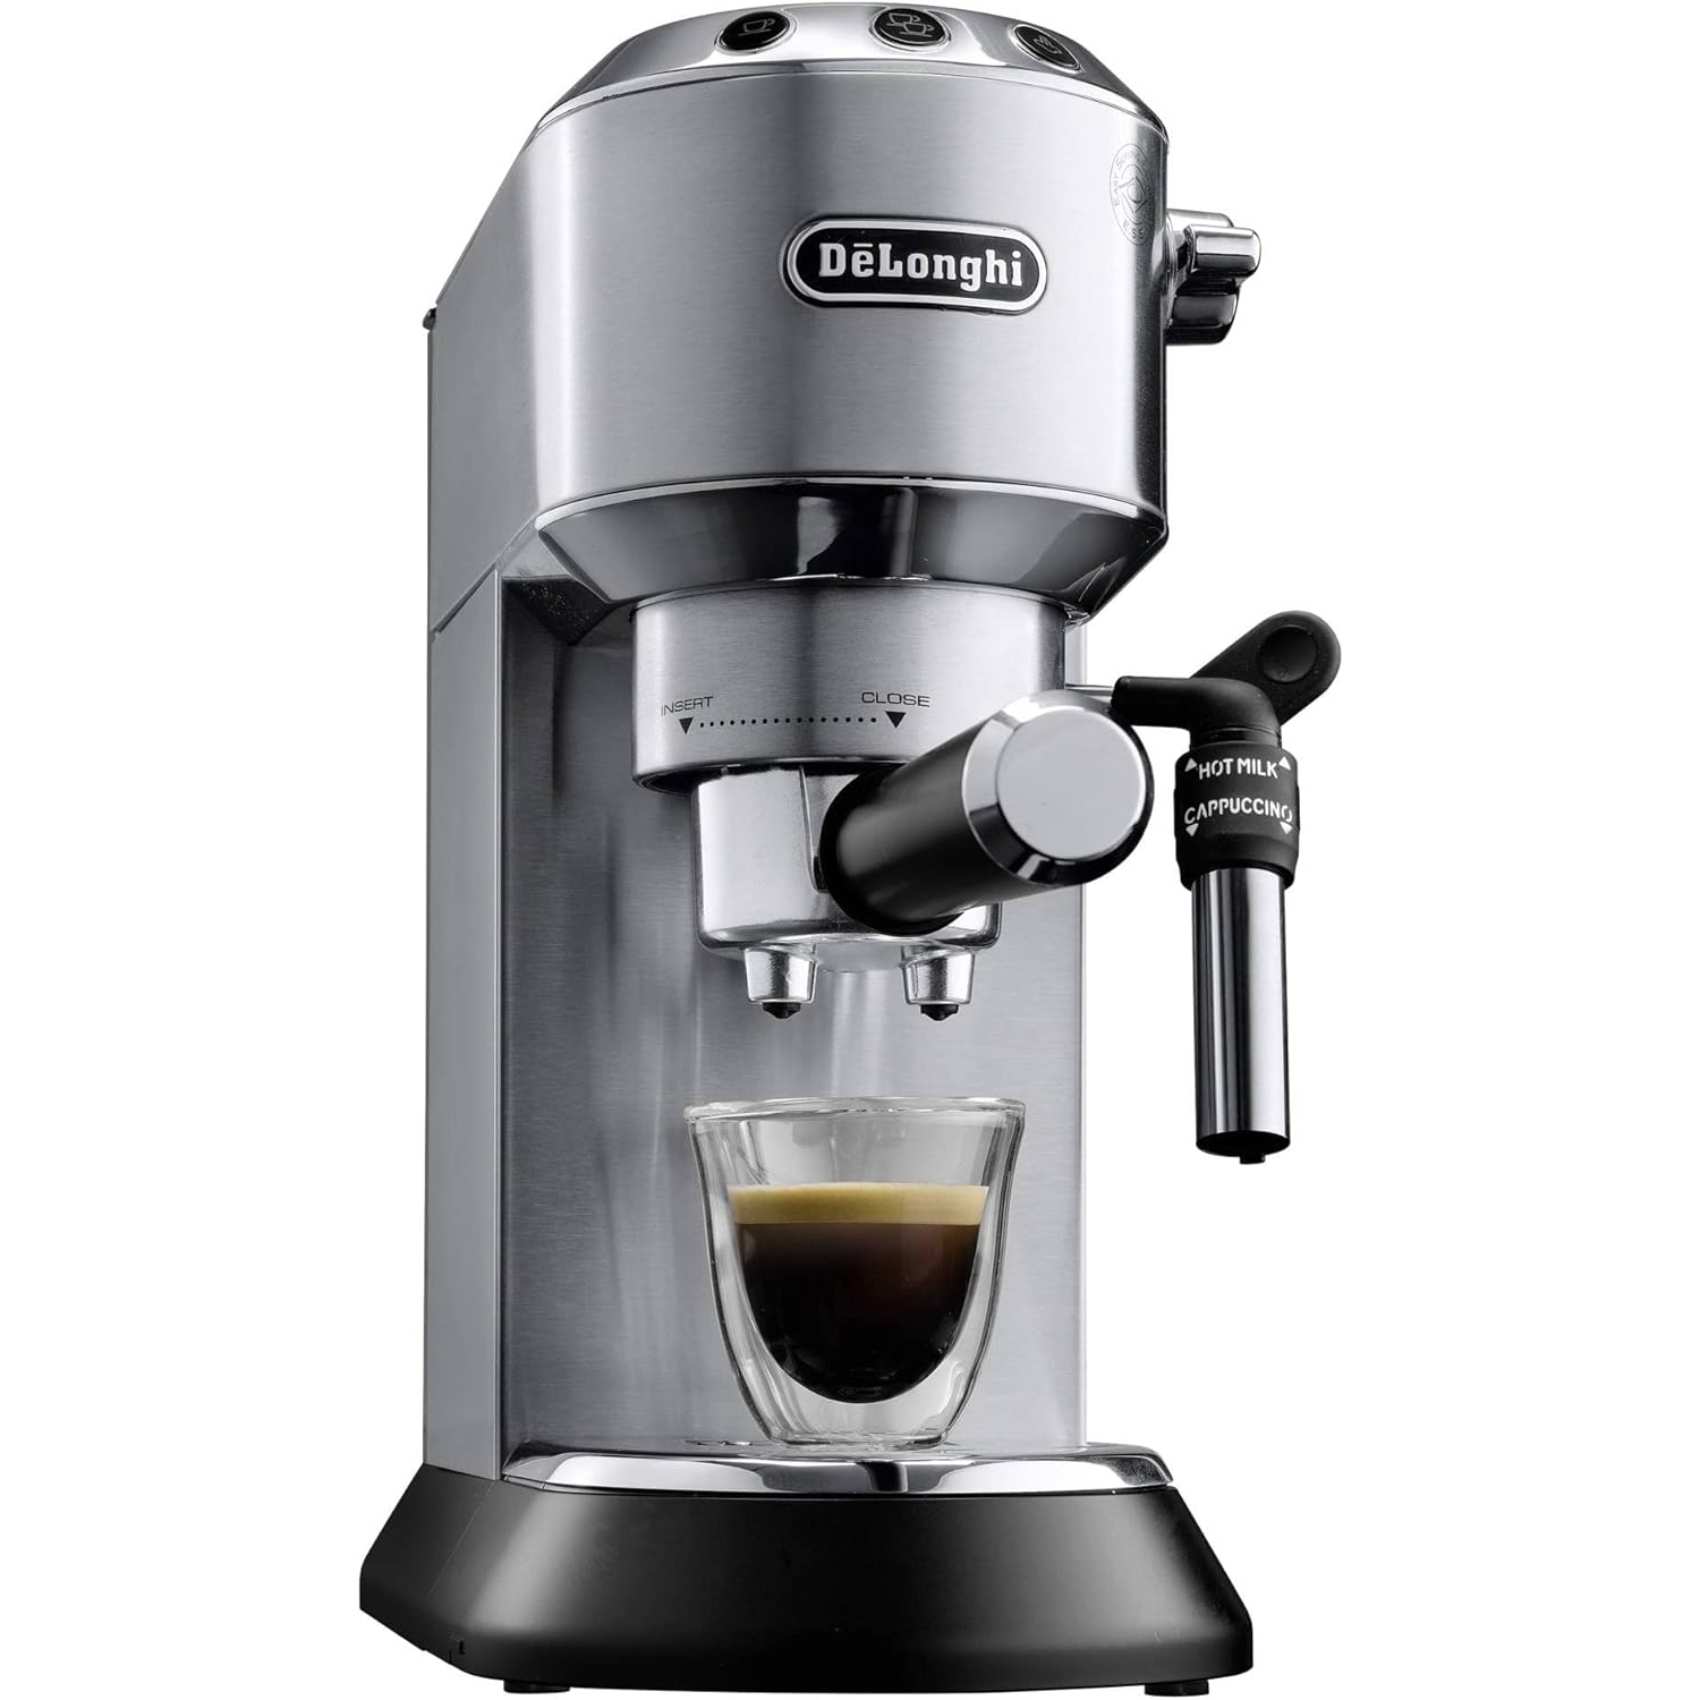 ديلونغي ماكينة تحضير قهوة إسبريسو بقوة 1300 واط - أسود EC685